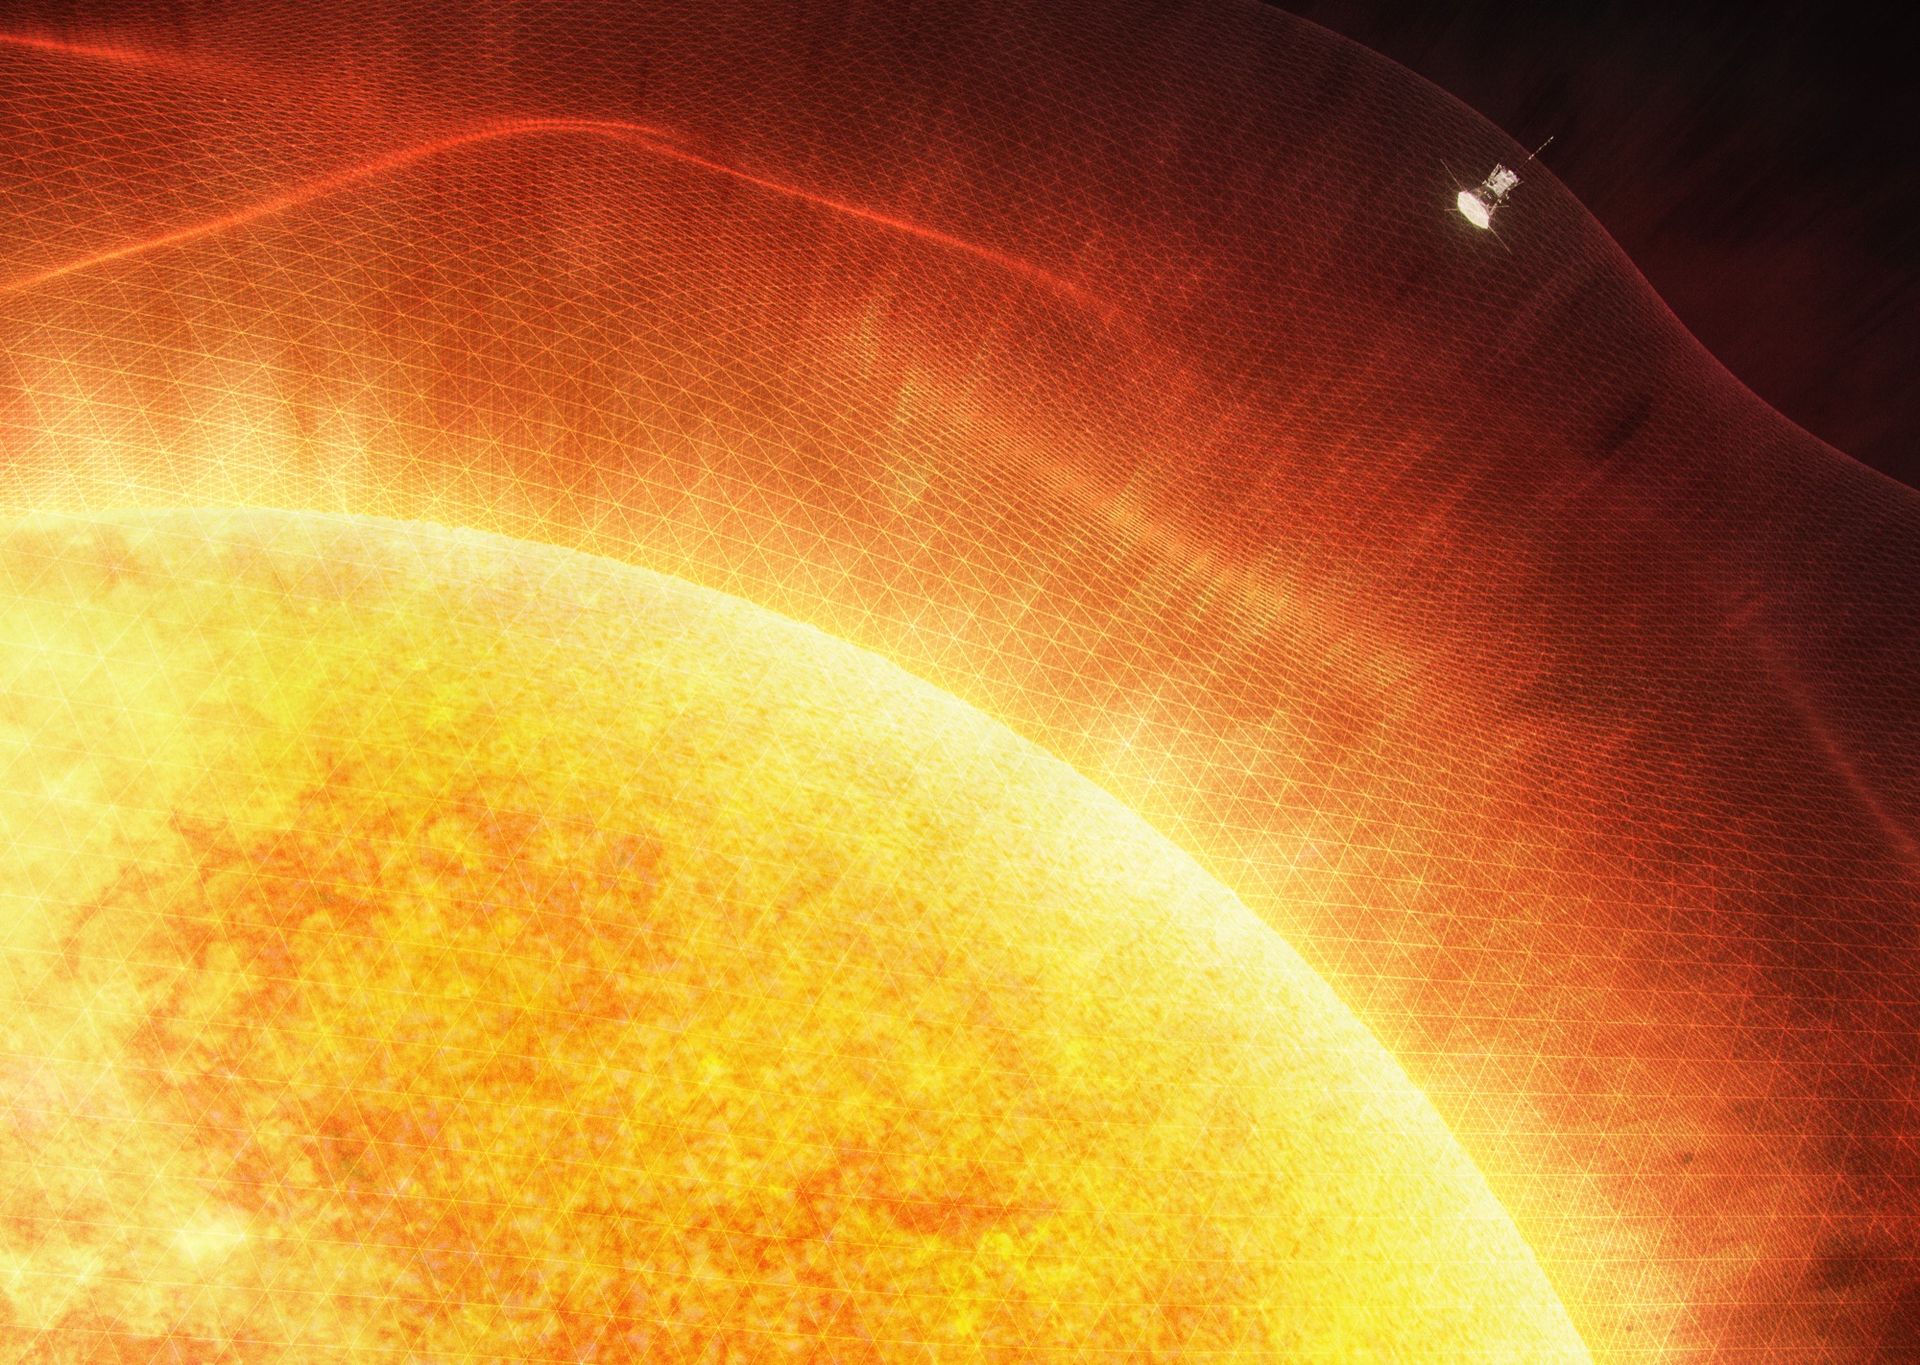 Parker Solar Probe har flugit genom solens atmosfär